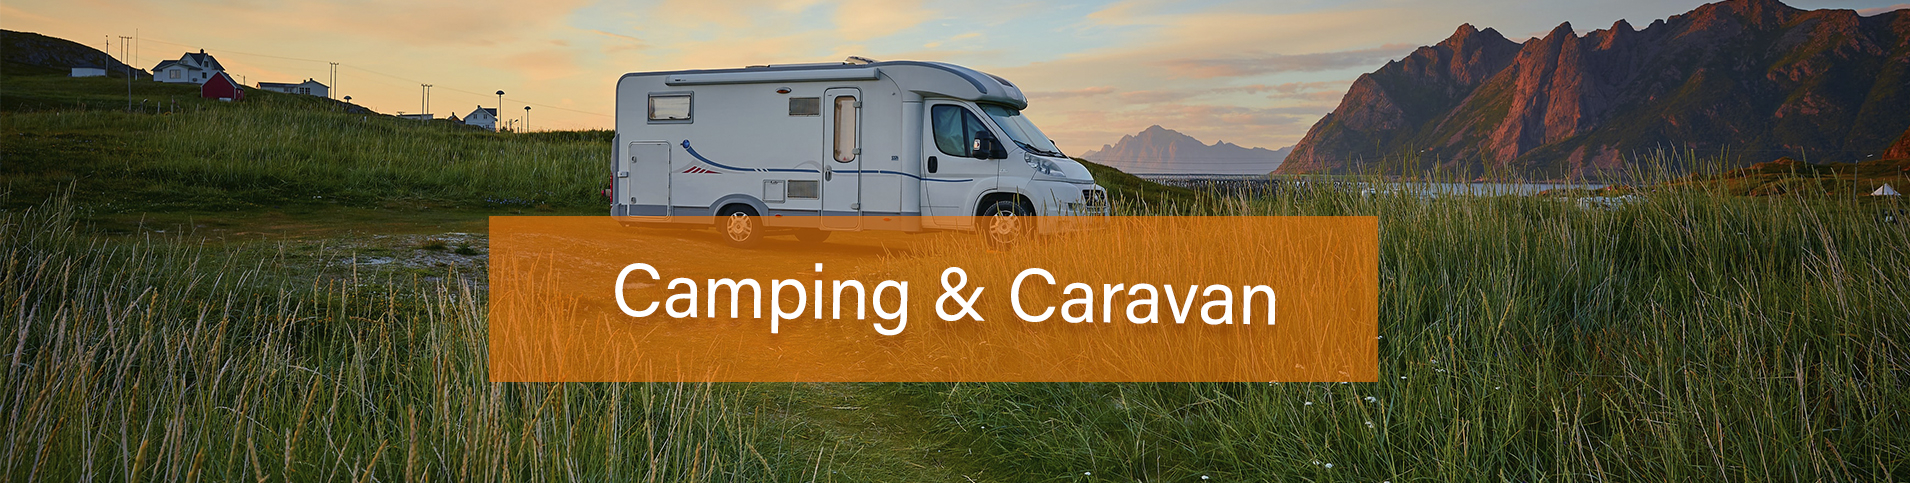 Camping & Caravan